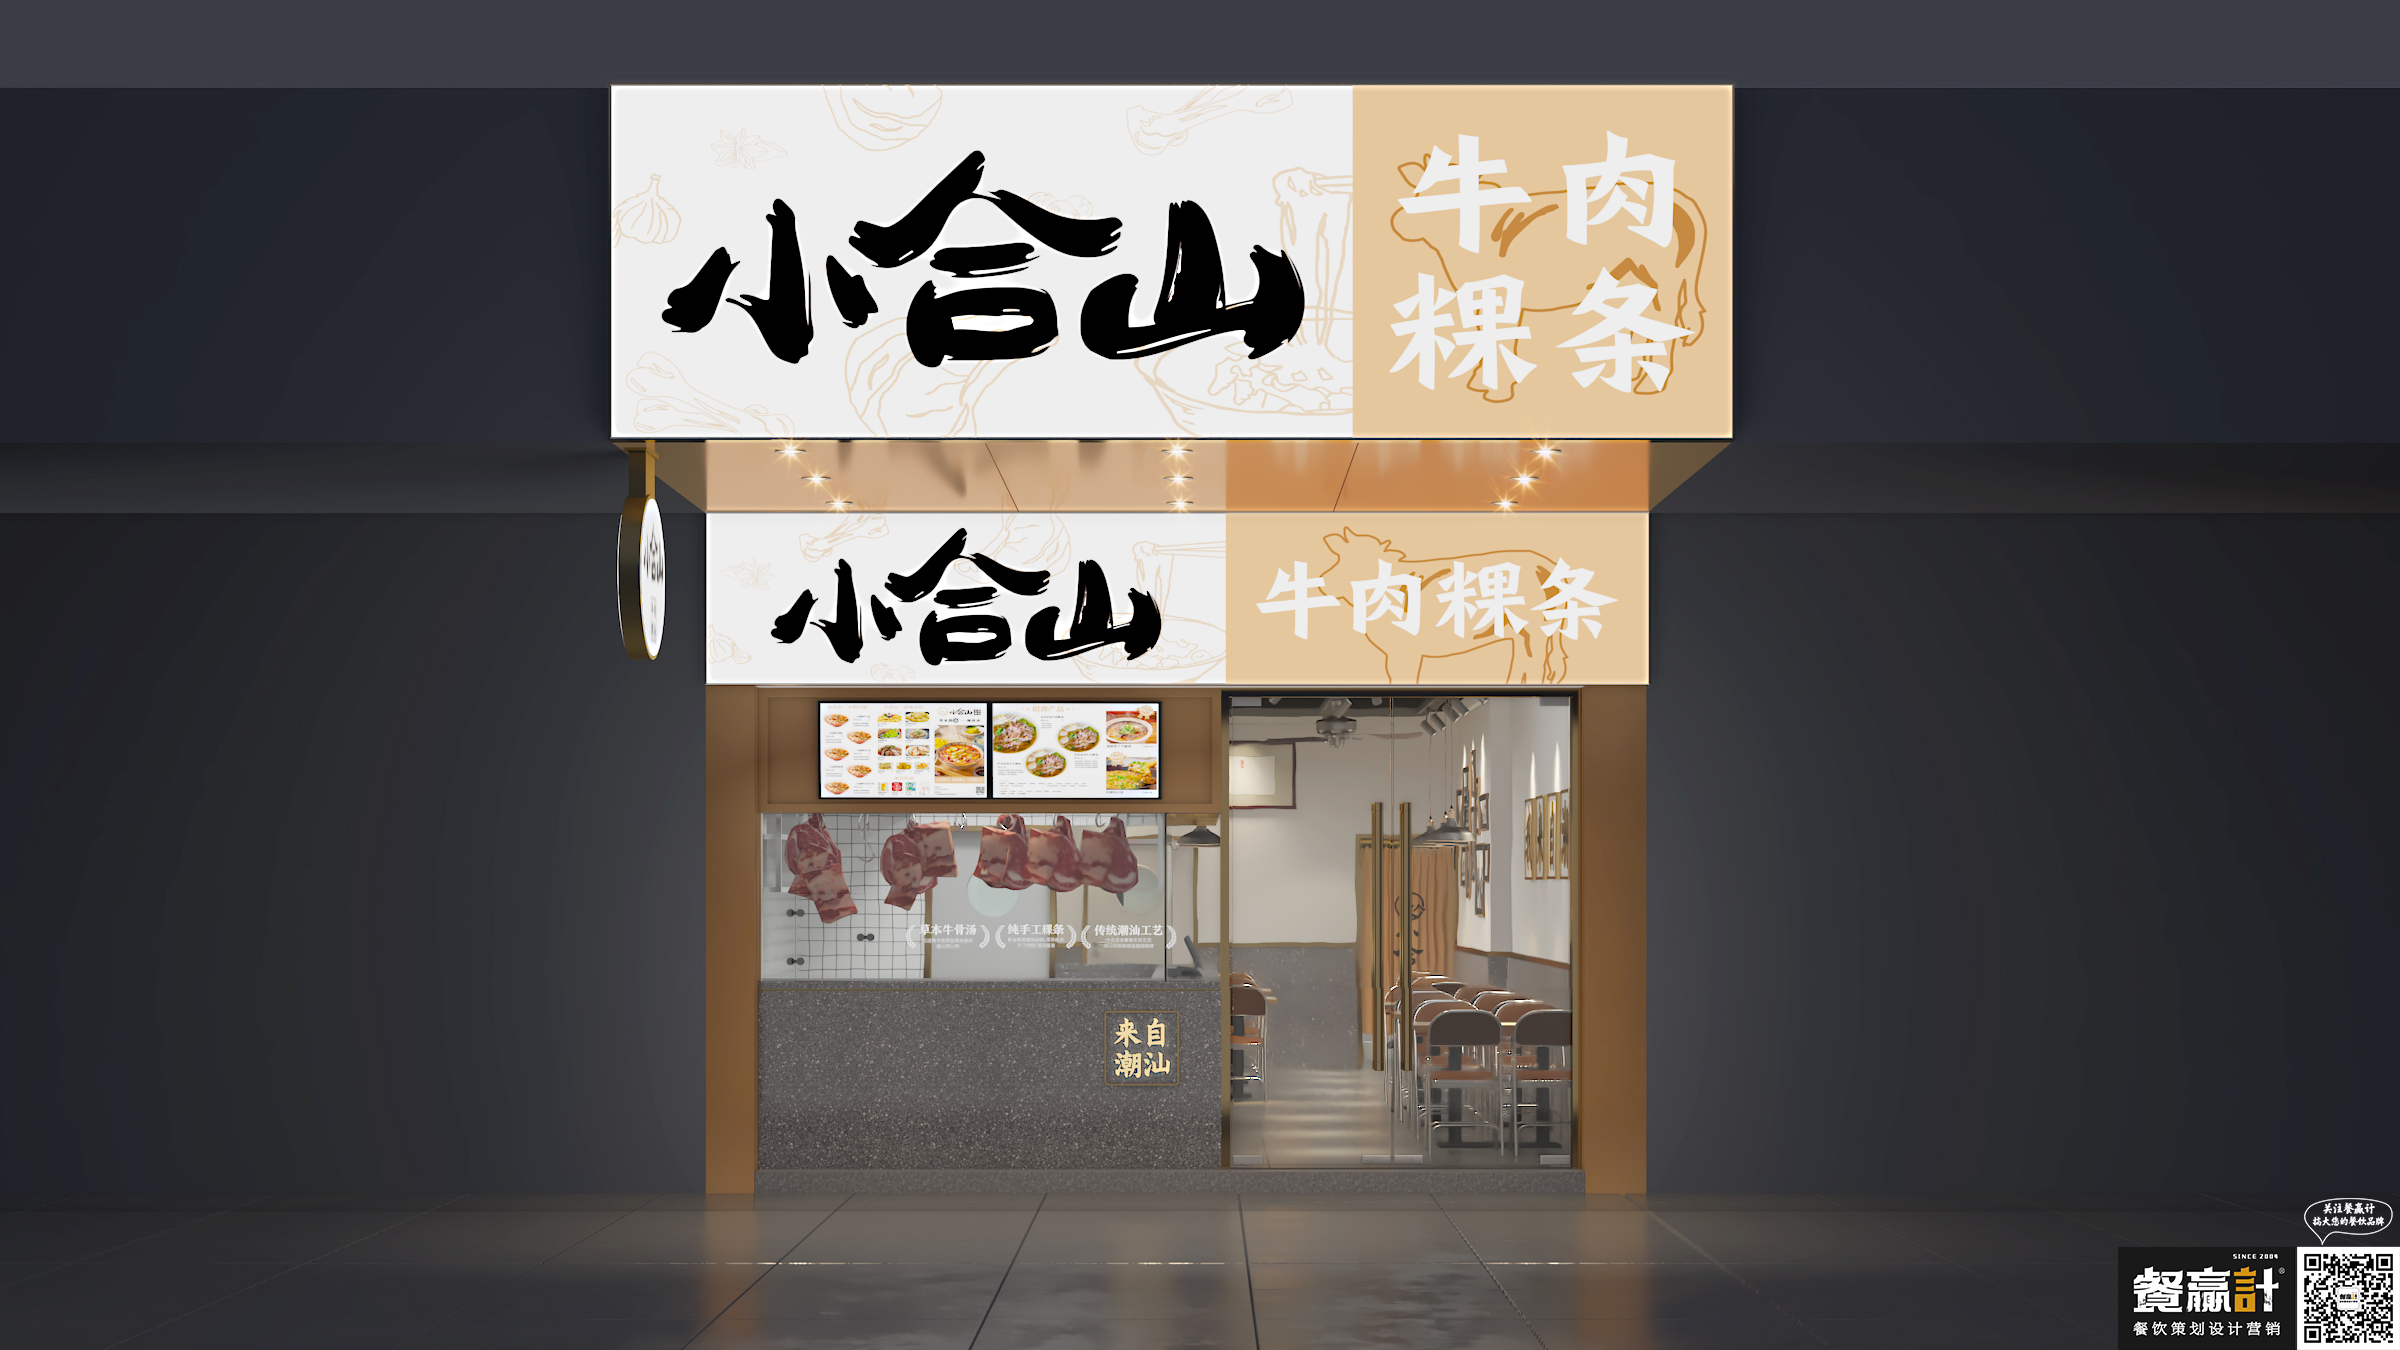 西贝小合山——牛肉粿条餐厅空间设计